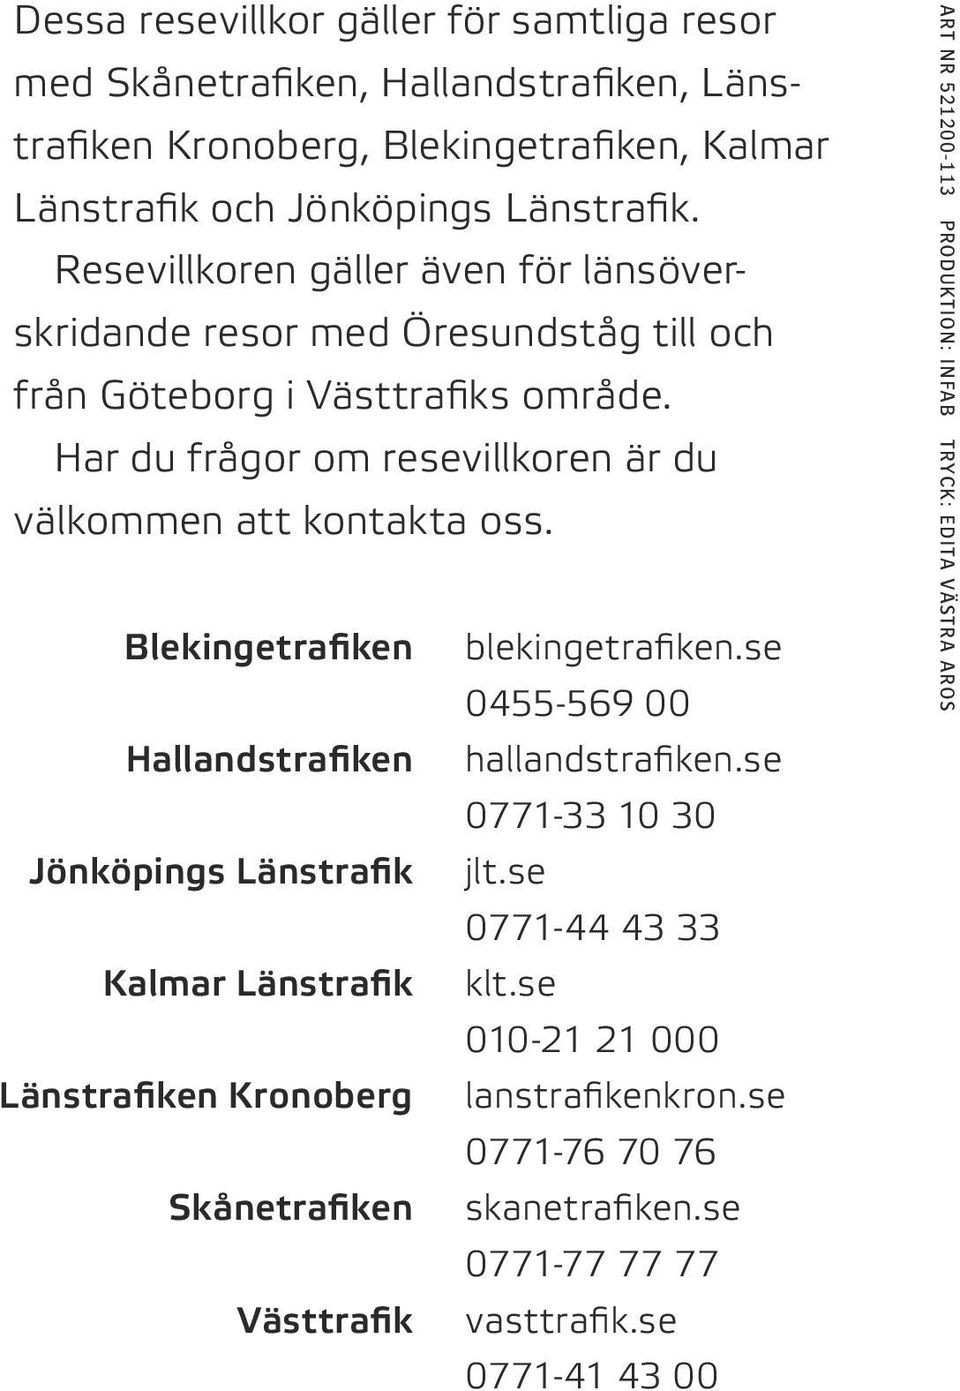 Blekingetrafiken blekingetrafiken.se 0455 569 00 Hallandstrafiken hallandstrafiken.se 0771 33 10 30 Jönköpings Länstrafik jlt.se 0771 44 43 33 Kalmar Länstrafik klt.